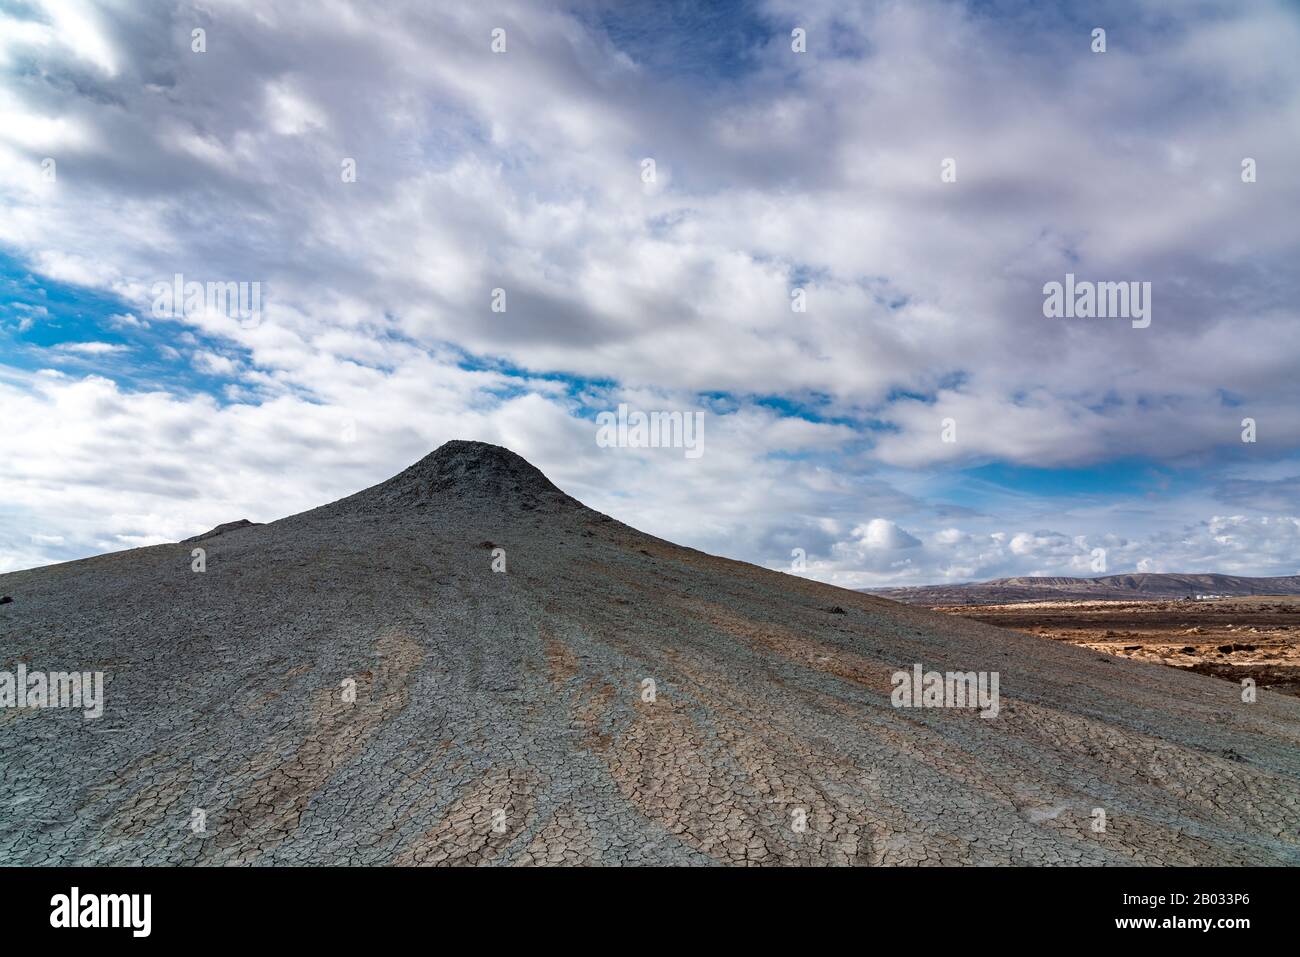 Mud volcano, amazing natural phenomenon Stock Photo